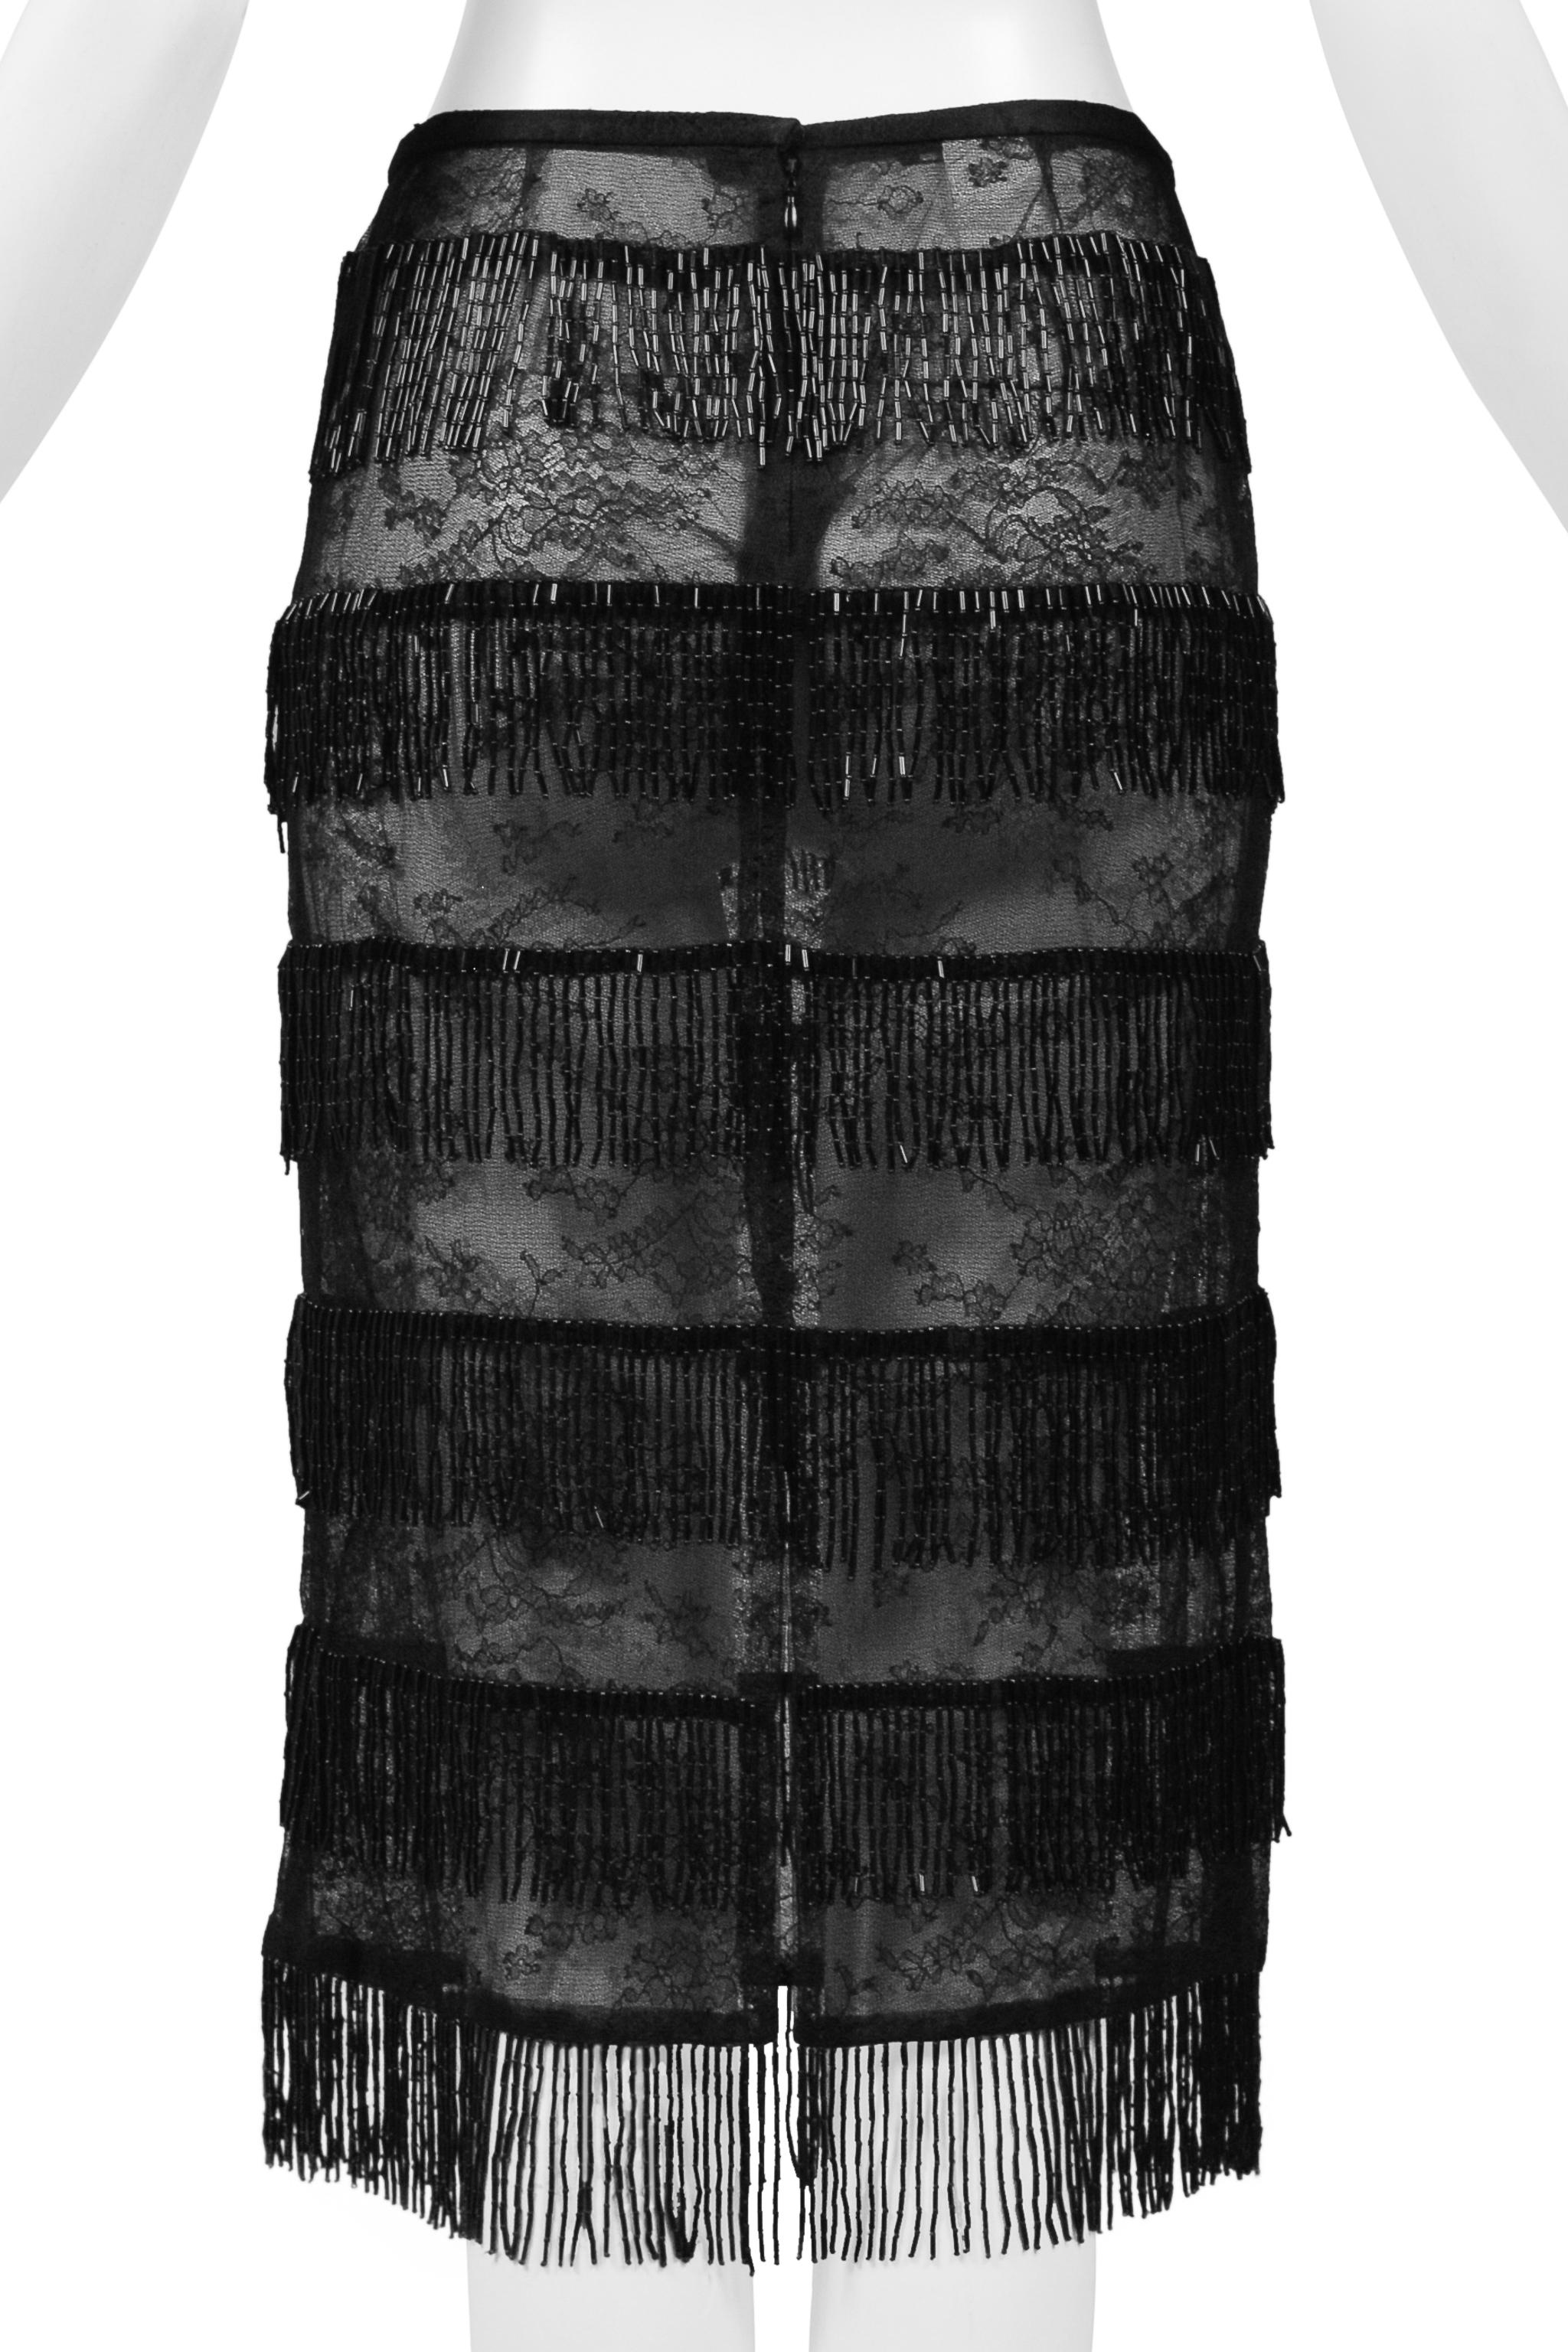 Dolce & Gabbana Black Sheer Skirt With Beaded Fringe SS 2000 For Sale 4